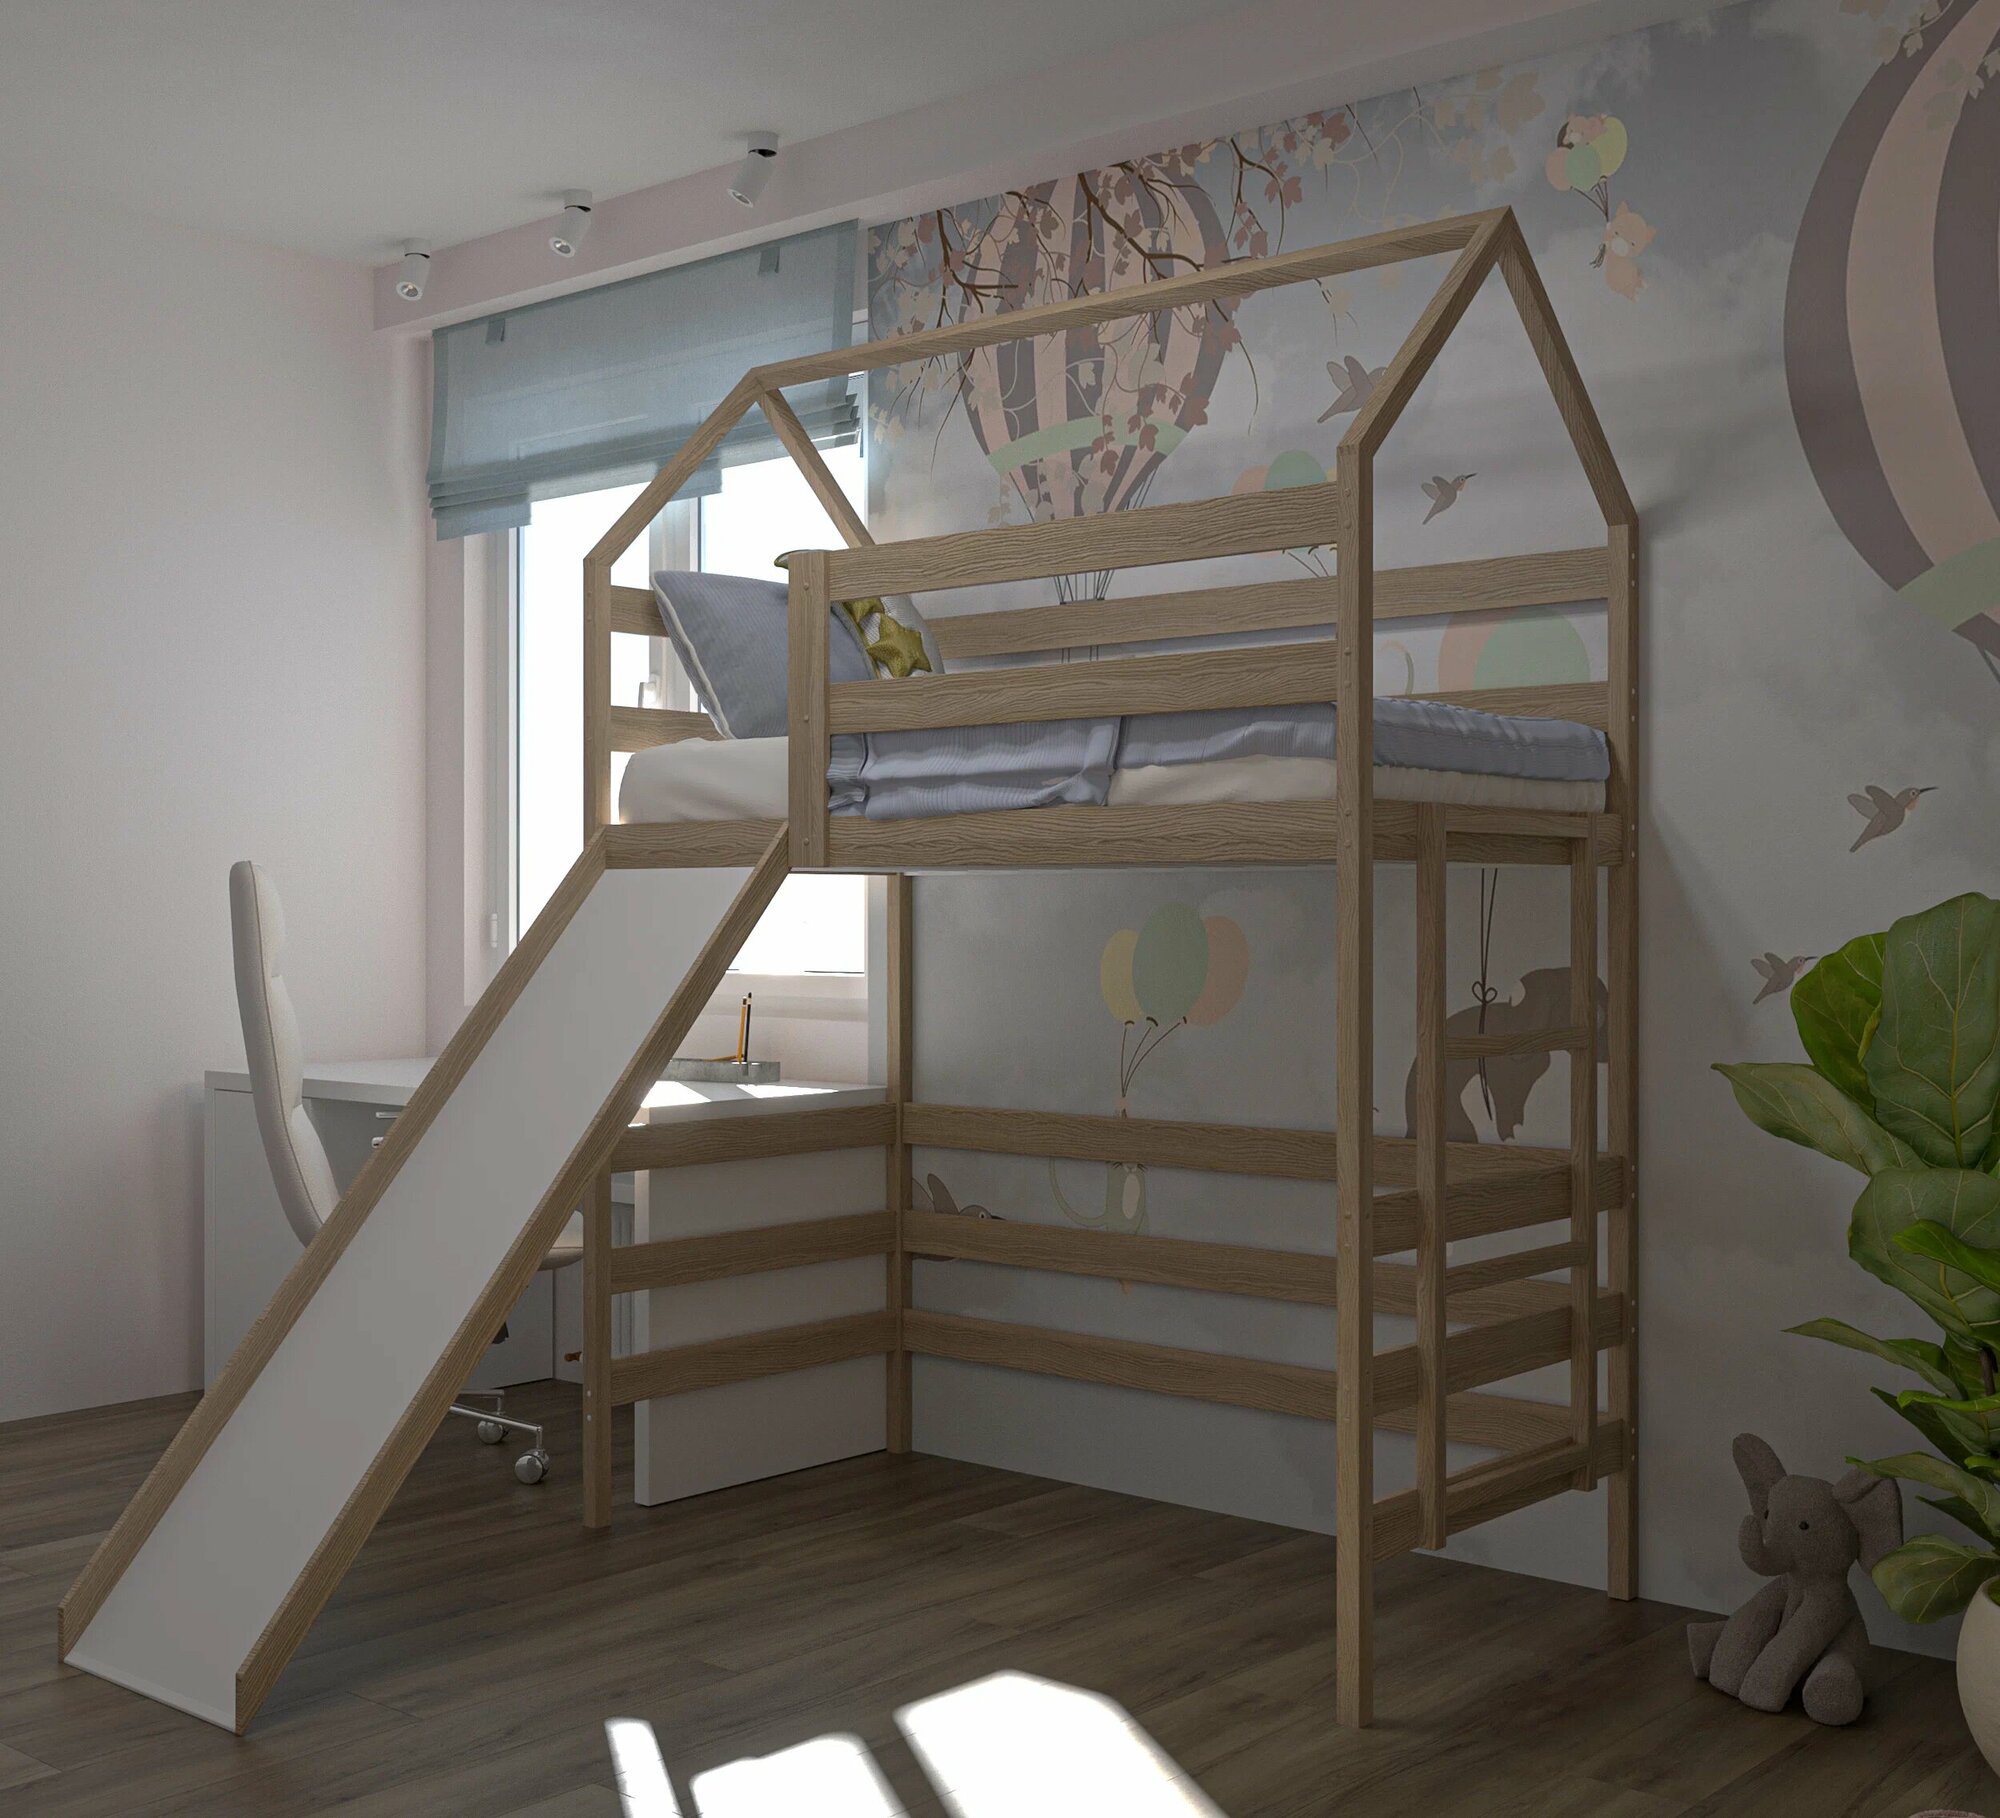 Кровать детская, подростковая "Чердак с горкой", 160х80, натуральный цвет, из массива